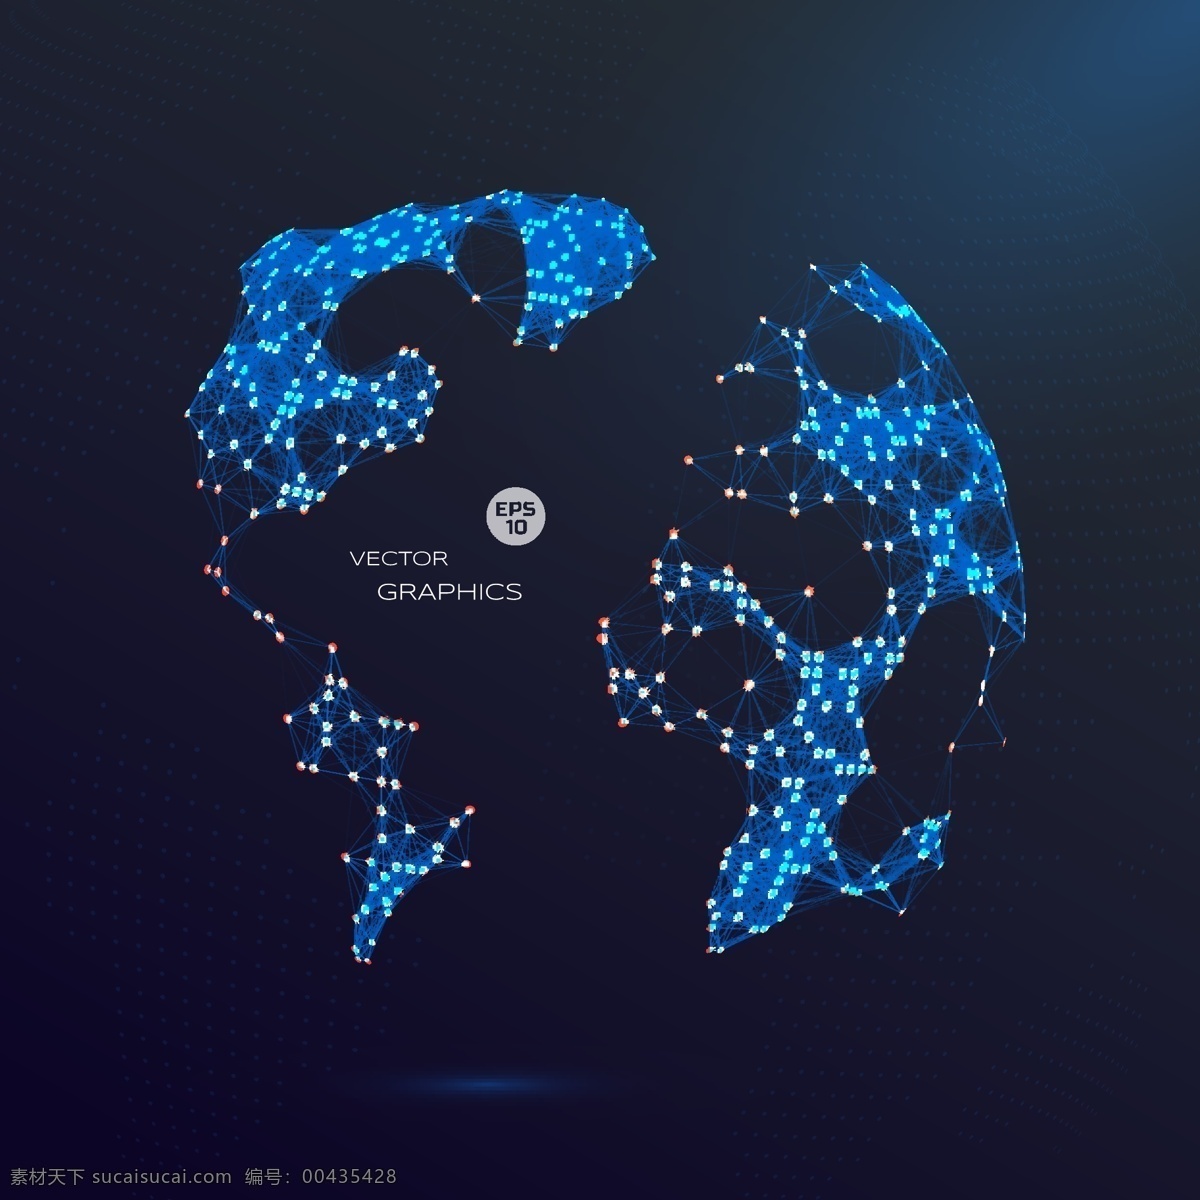 抽象 3d 矢量 全球化 地球 模板 模版 蓝色 点线 点状 背景 宇宙 太空 云计算 大数据 人工智能 通讯 网络 科技 通信 物联网 矢量素材 现代科技